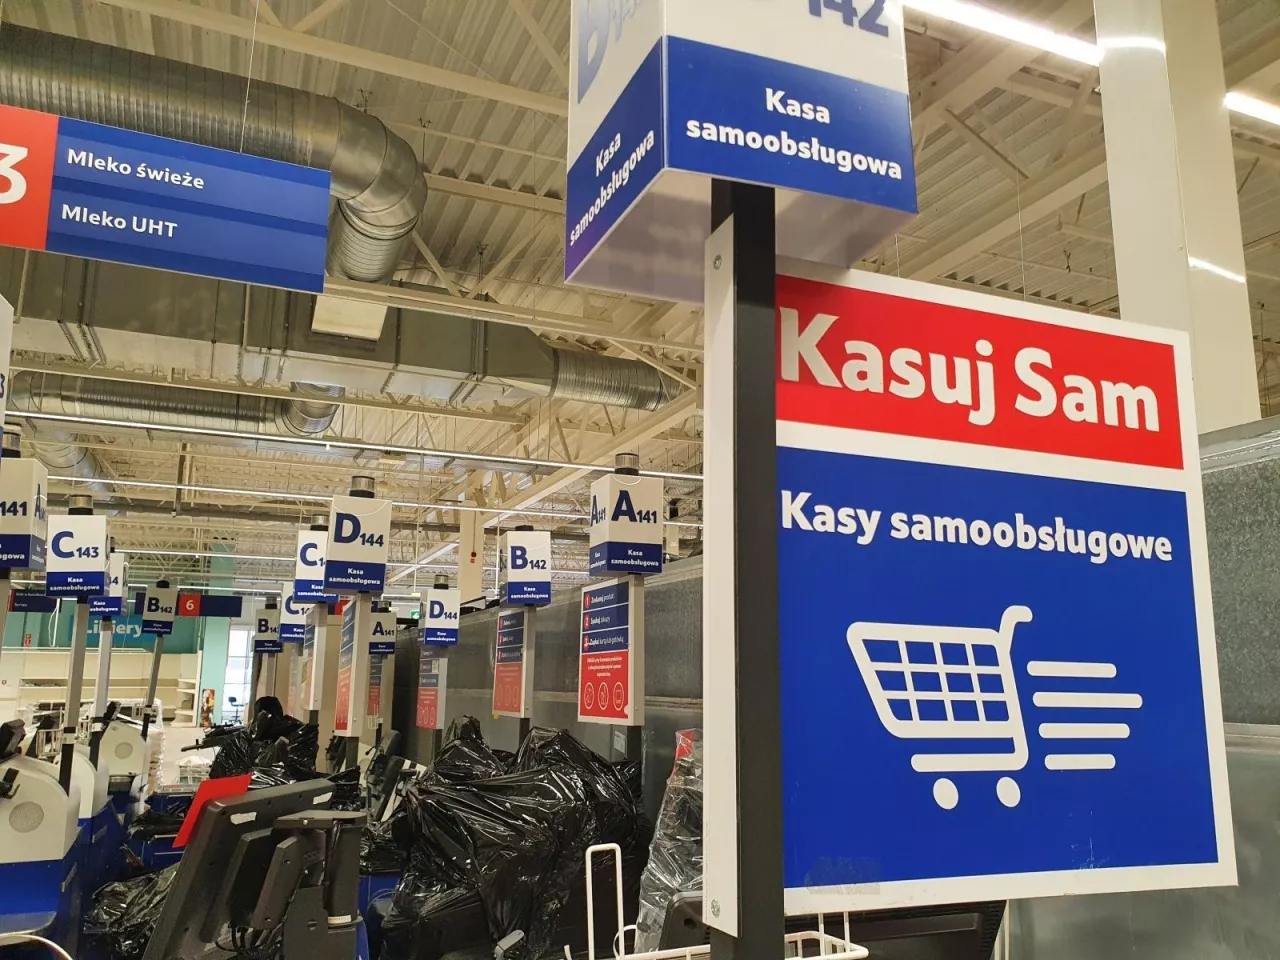 Tesco w Sochaczewie, sklep-magazyn rzeczy niesprzedanych (fot. wiadomoscihandlowe.pl)